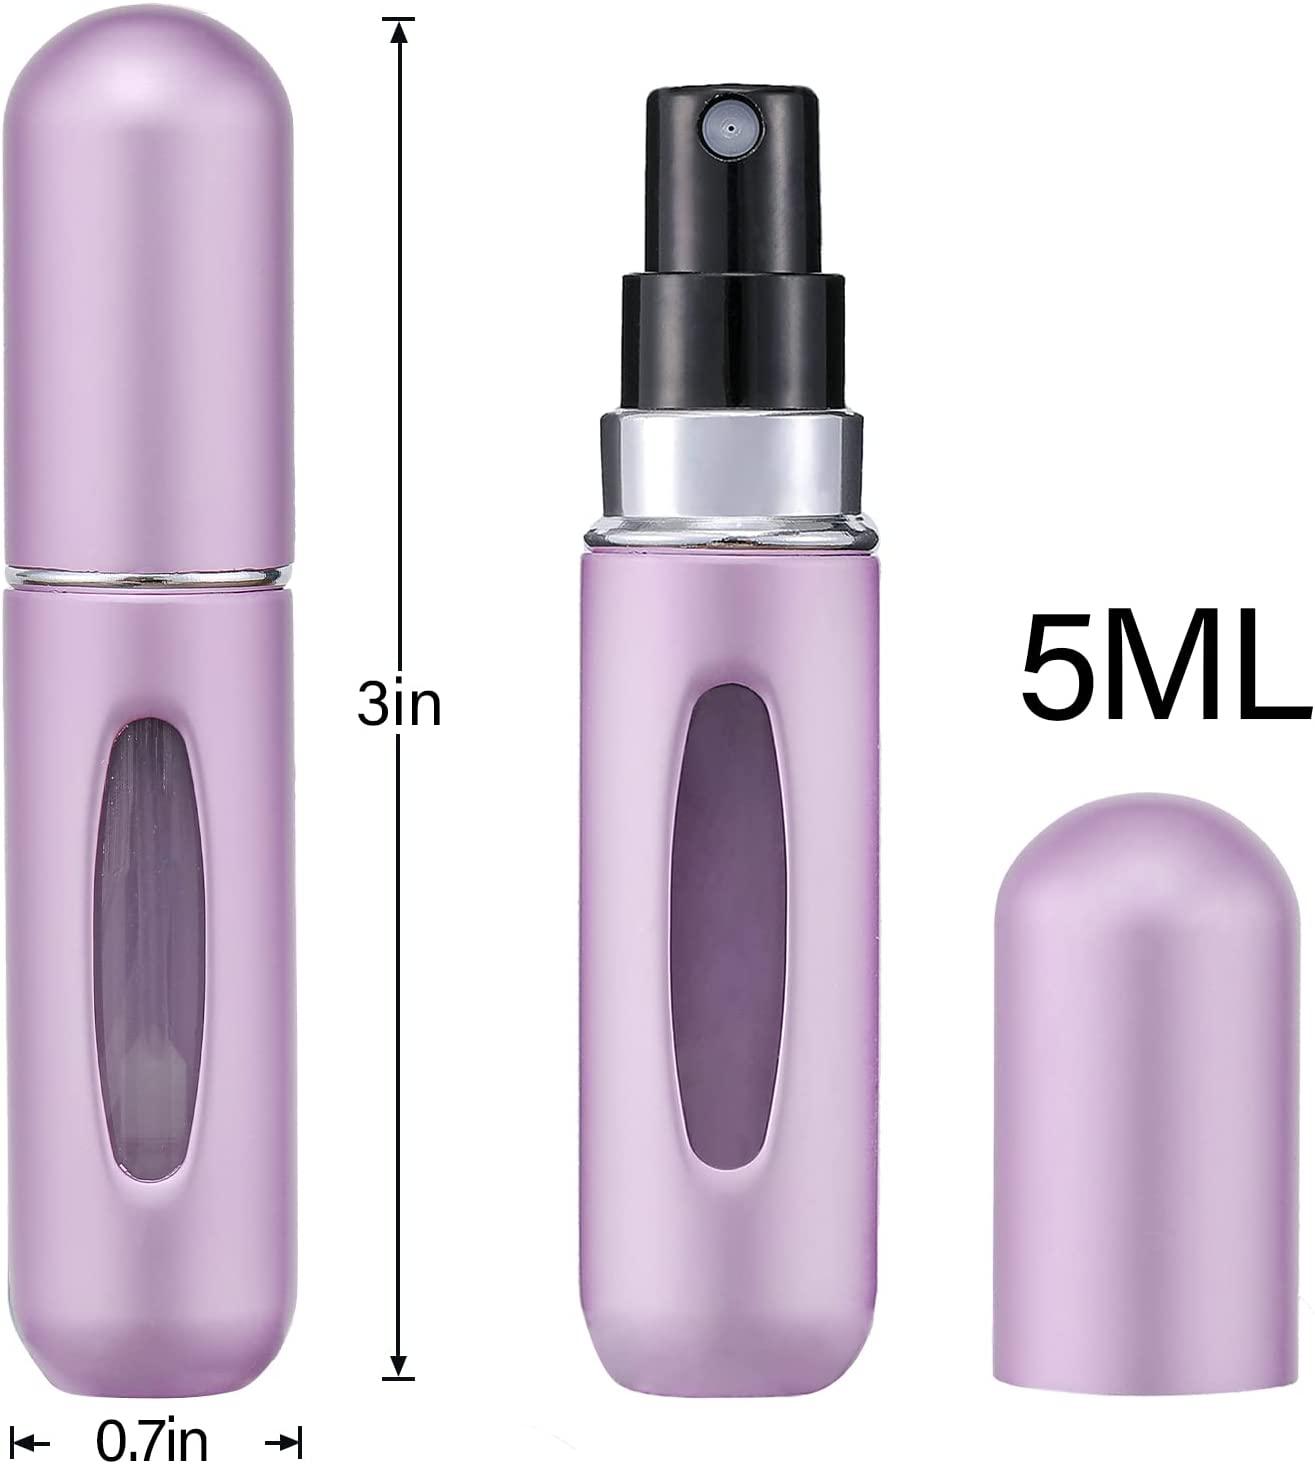 Mini Refillable Perfume Atomizer - Portable Mini Refillable